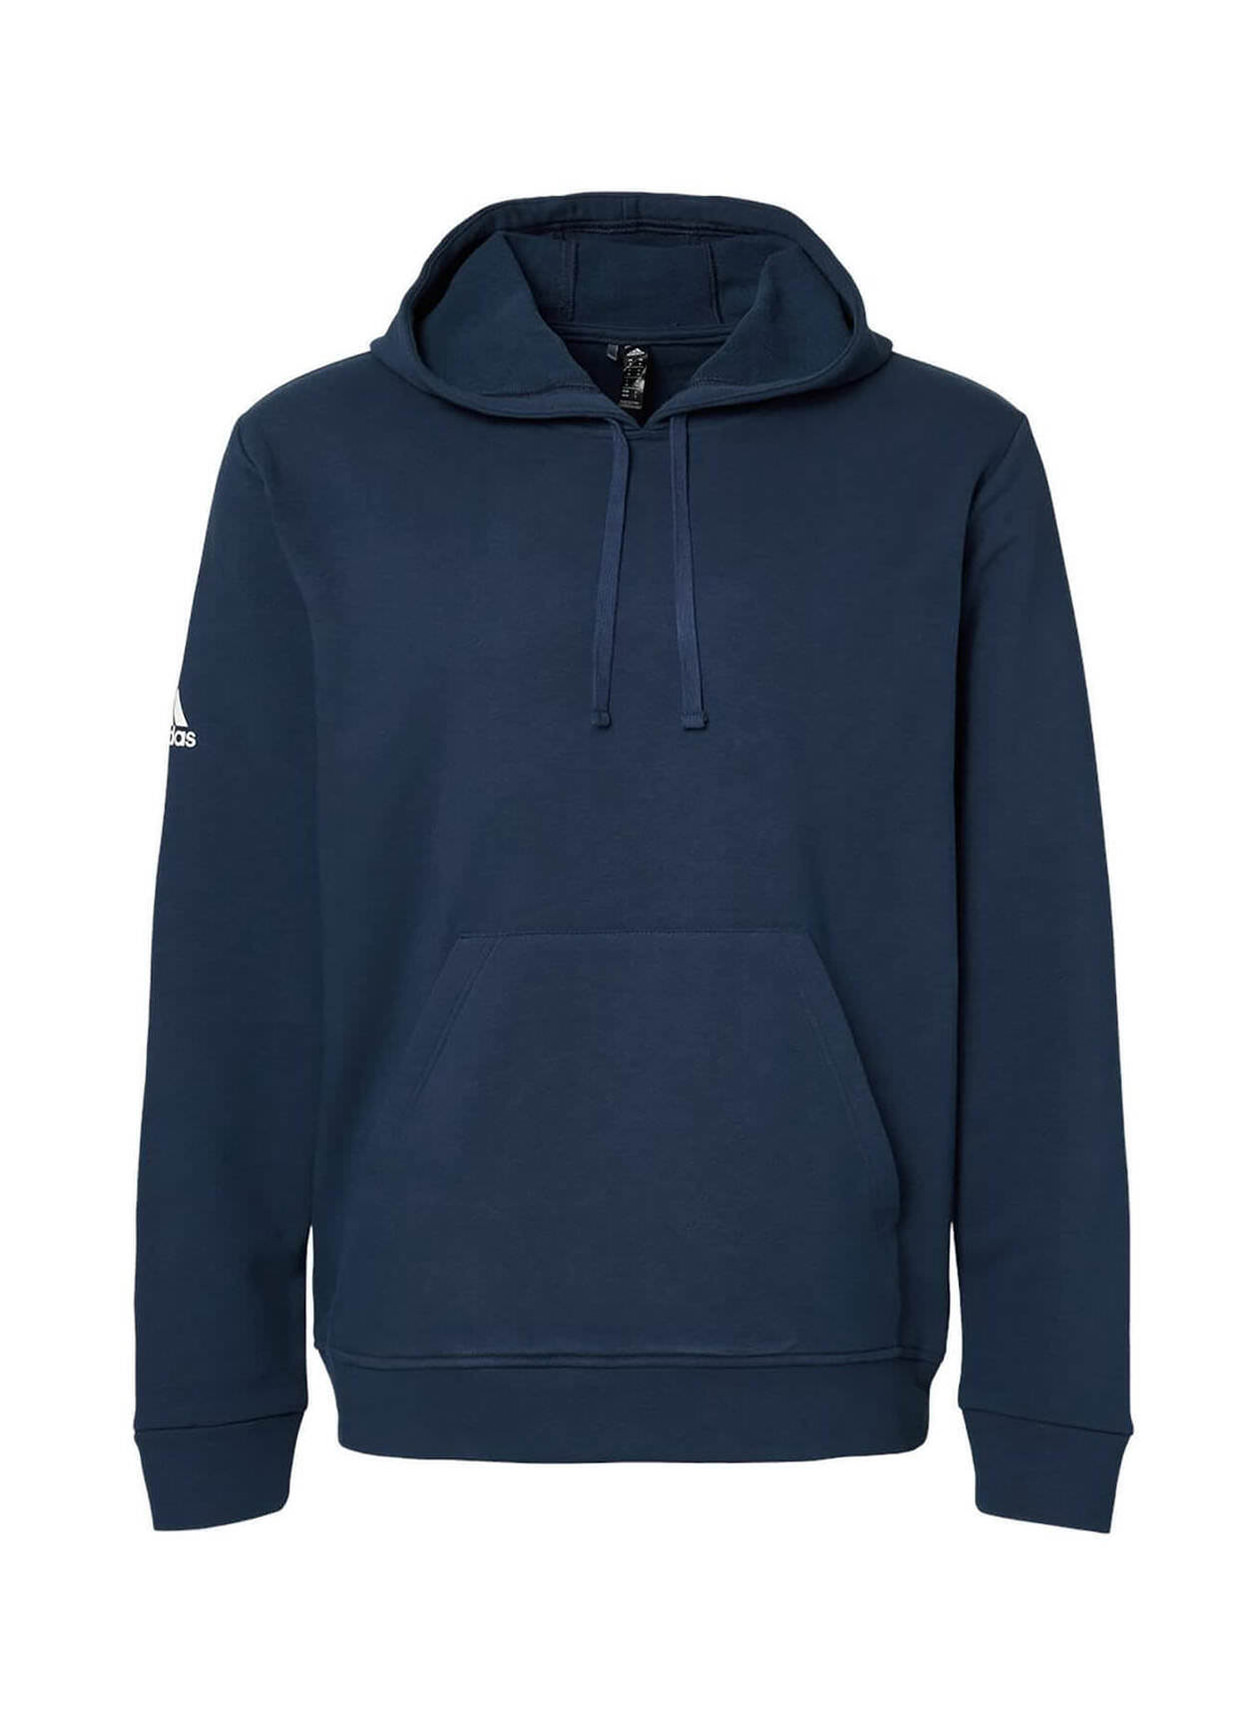 Adidas Men's Collegiate Navy Fleece Hooded Sweatshirt